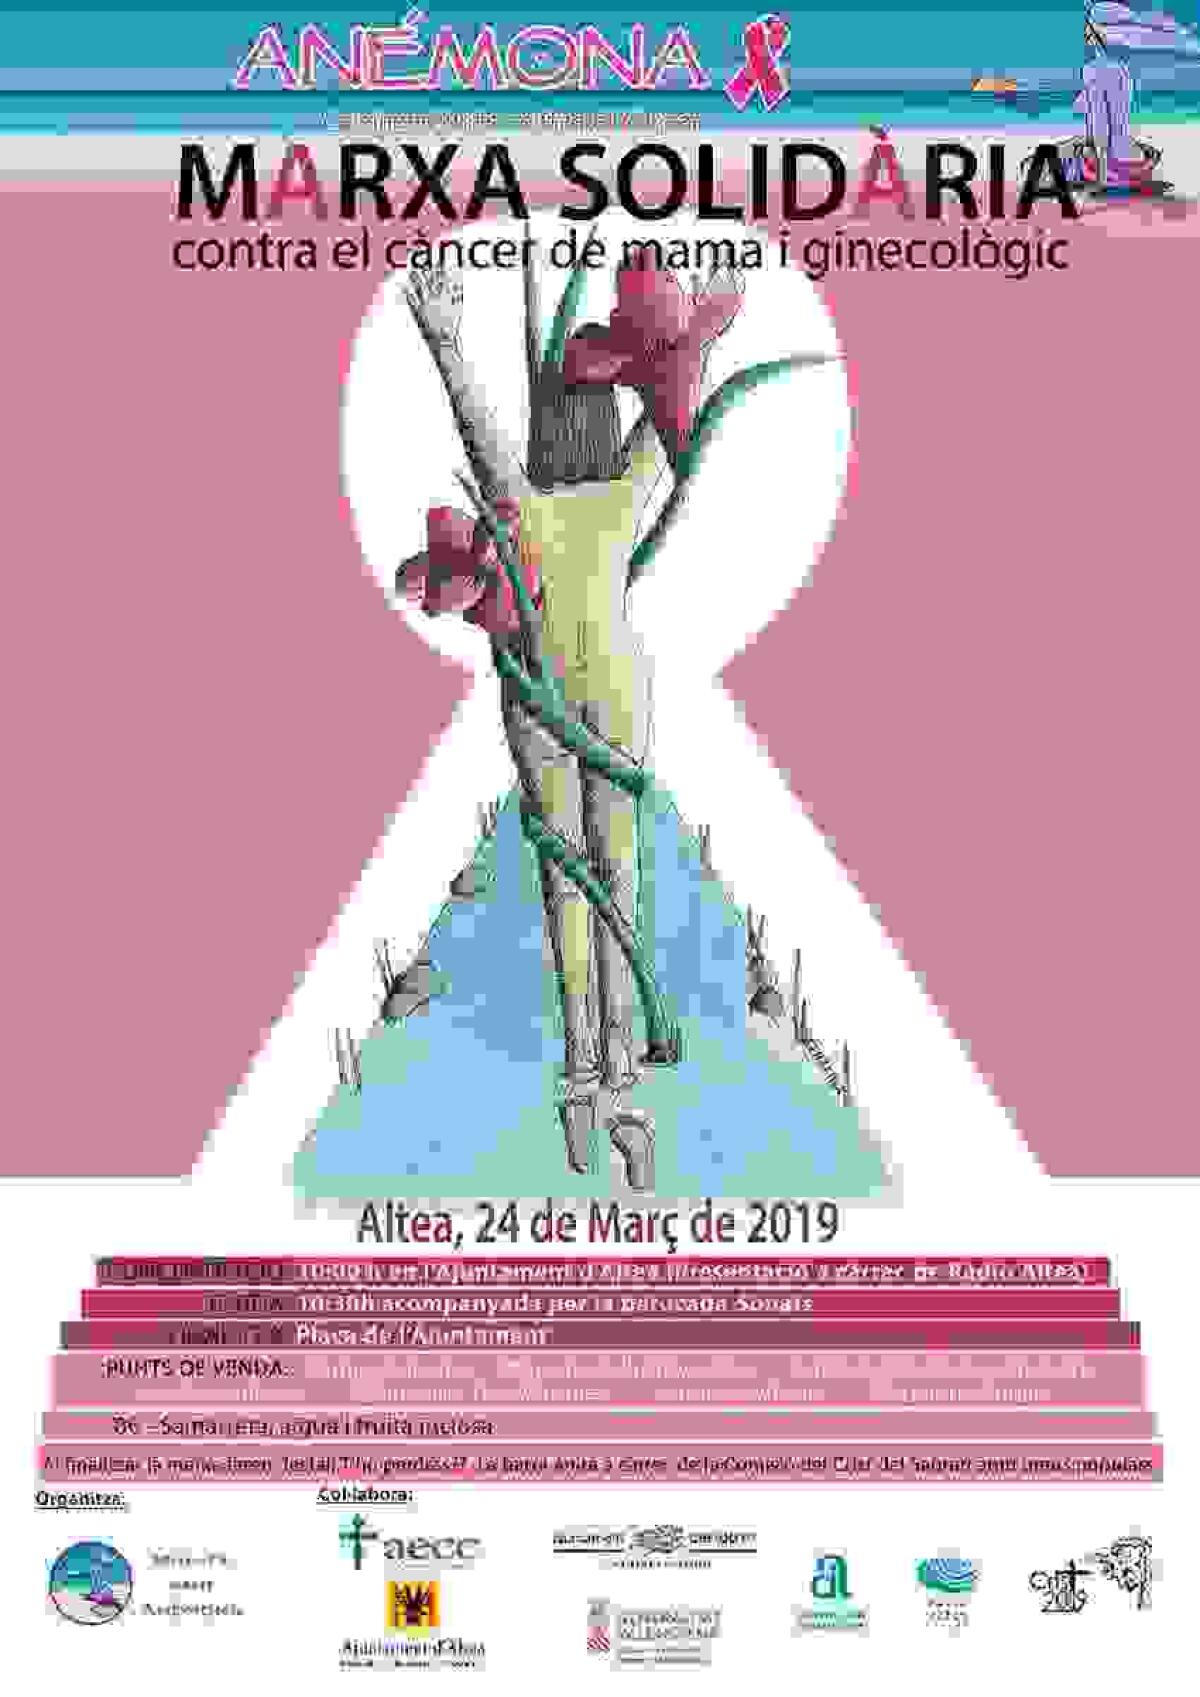 El domingo 24 de marzo se celebrará la cuarta edición de la marcha de Anémona en Altea